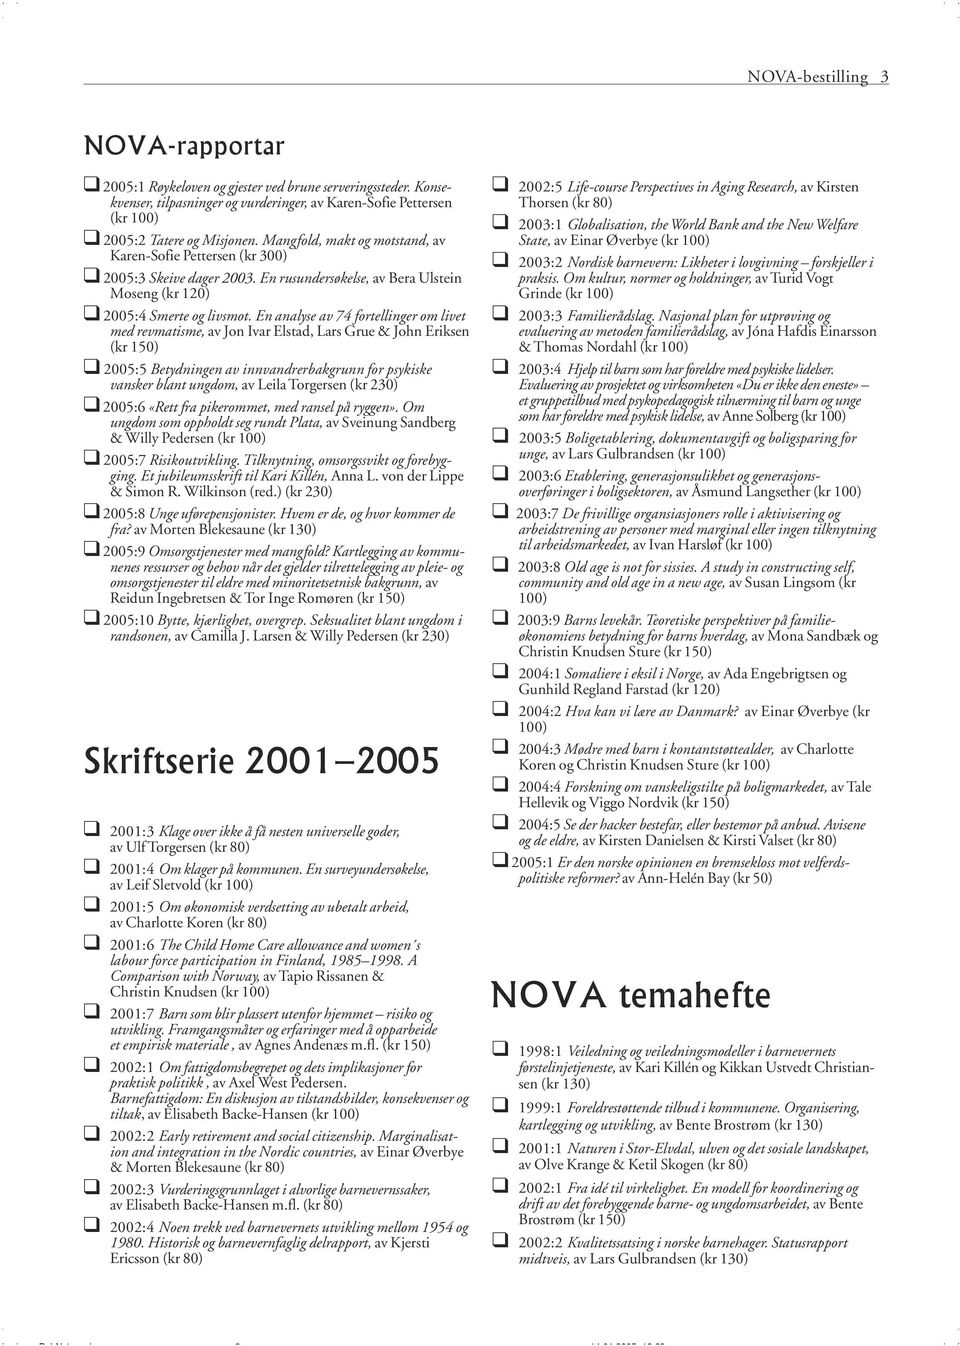 En analyse av 74 fortellinger om livet med revmatisme, av Jon Ivar Elstad, Lars Grue & John Eriksen (kr 150) " 2005:5 Betydningen av innvandrerbakgrunn for psykiske vansker blant ungdom, av Leila